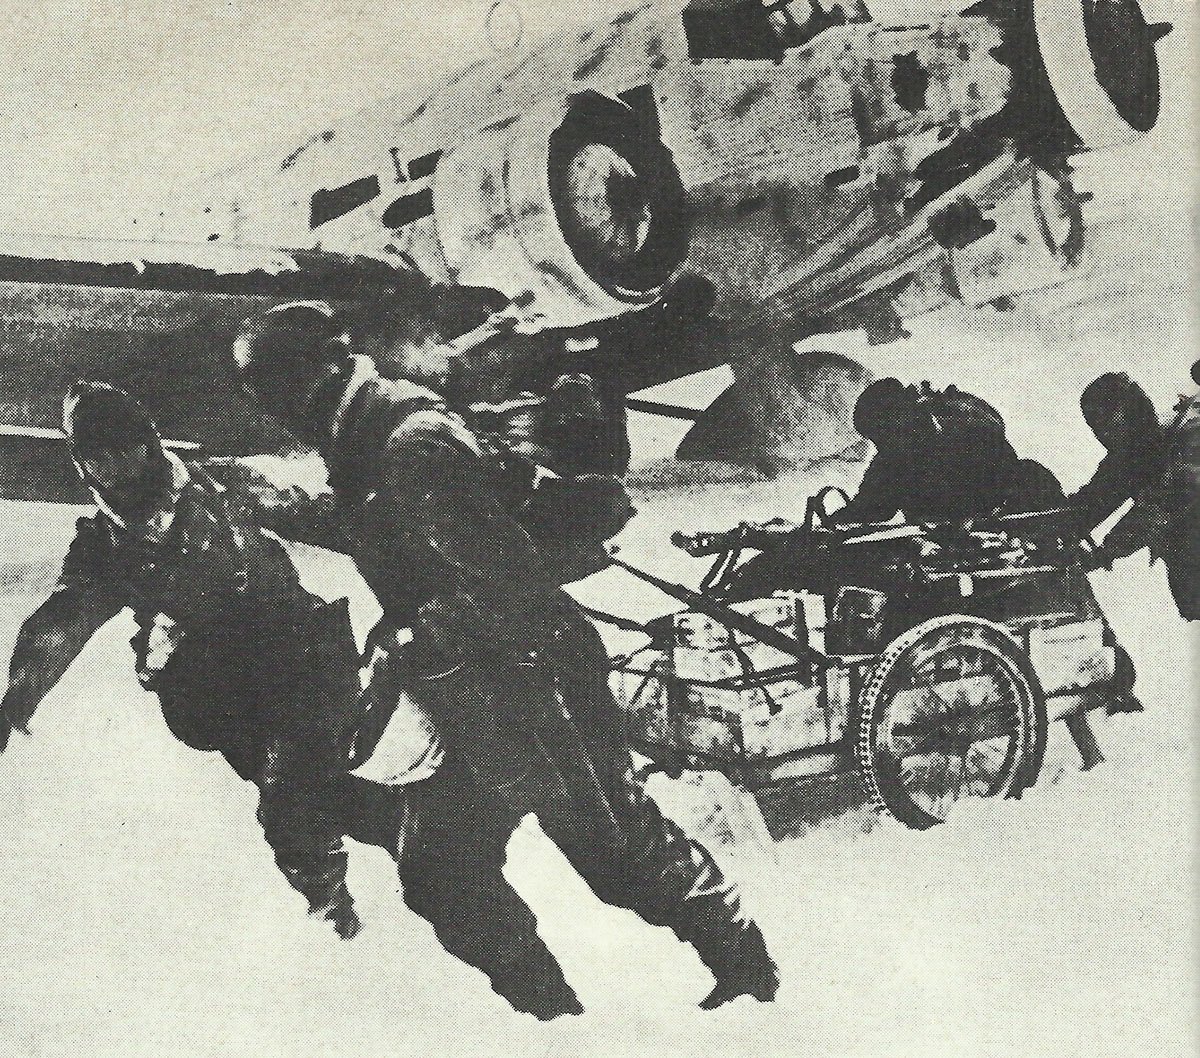 Ju 52 in the Stalingrad pocket